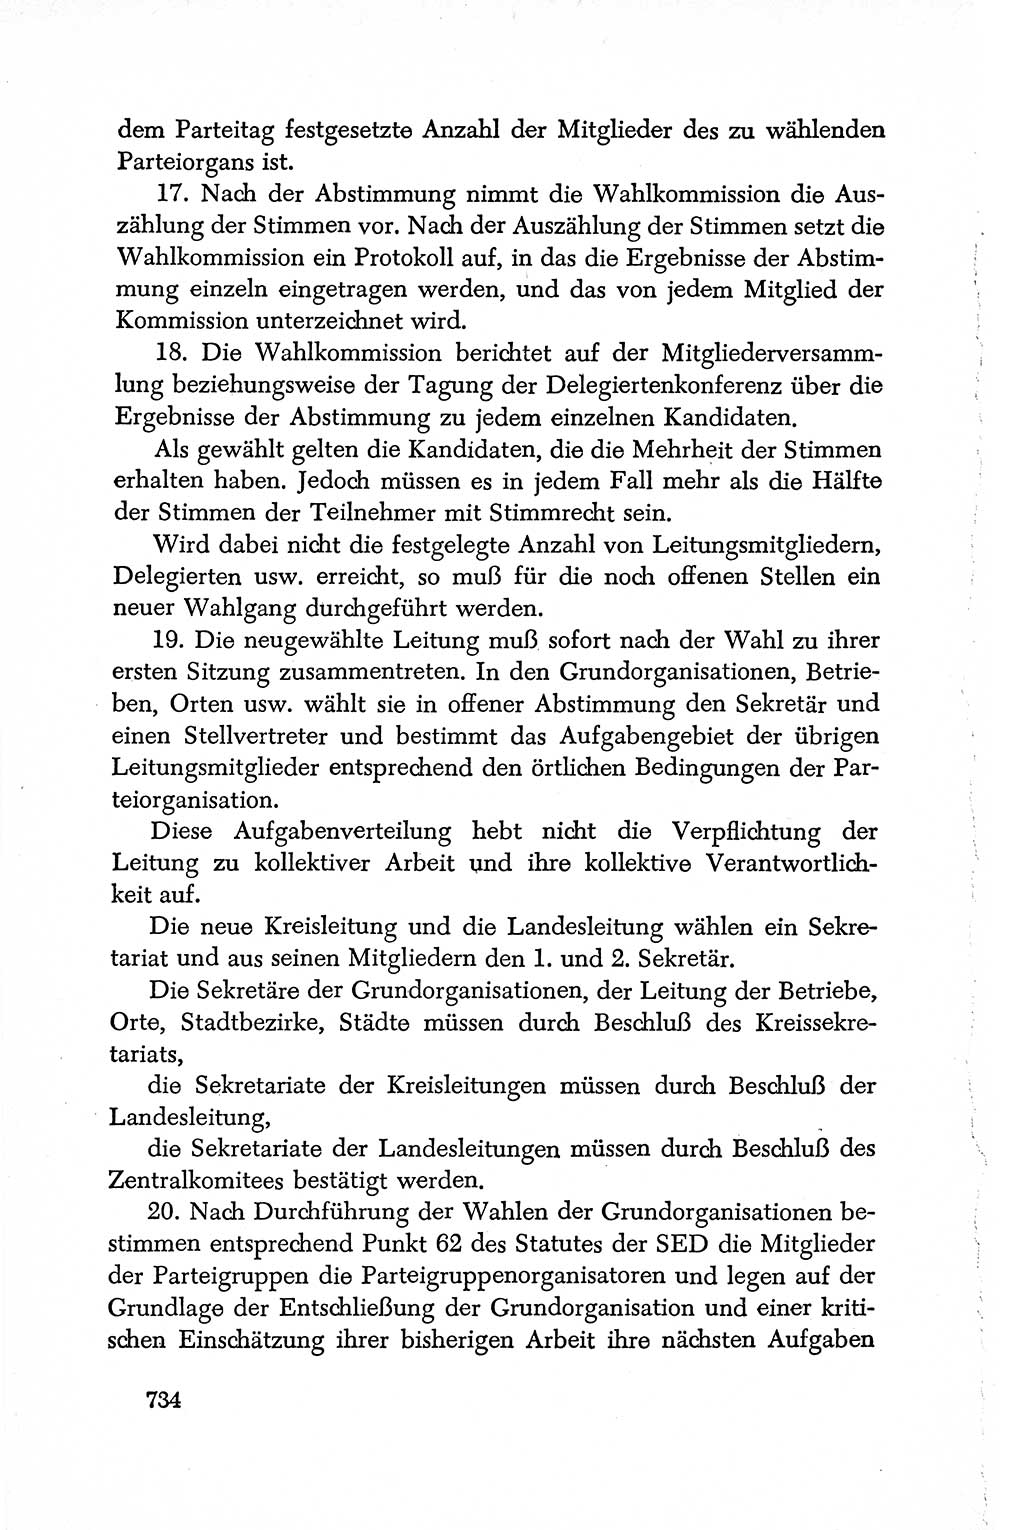 Dokumente der Sozialistischen Einheitspartei Deutschlands (SED) [Deutsche Demokratische Republik (DDR)] 1950-1952, Seite 734 (Dok. SED DDR 1950-1952, S. 734)